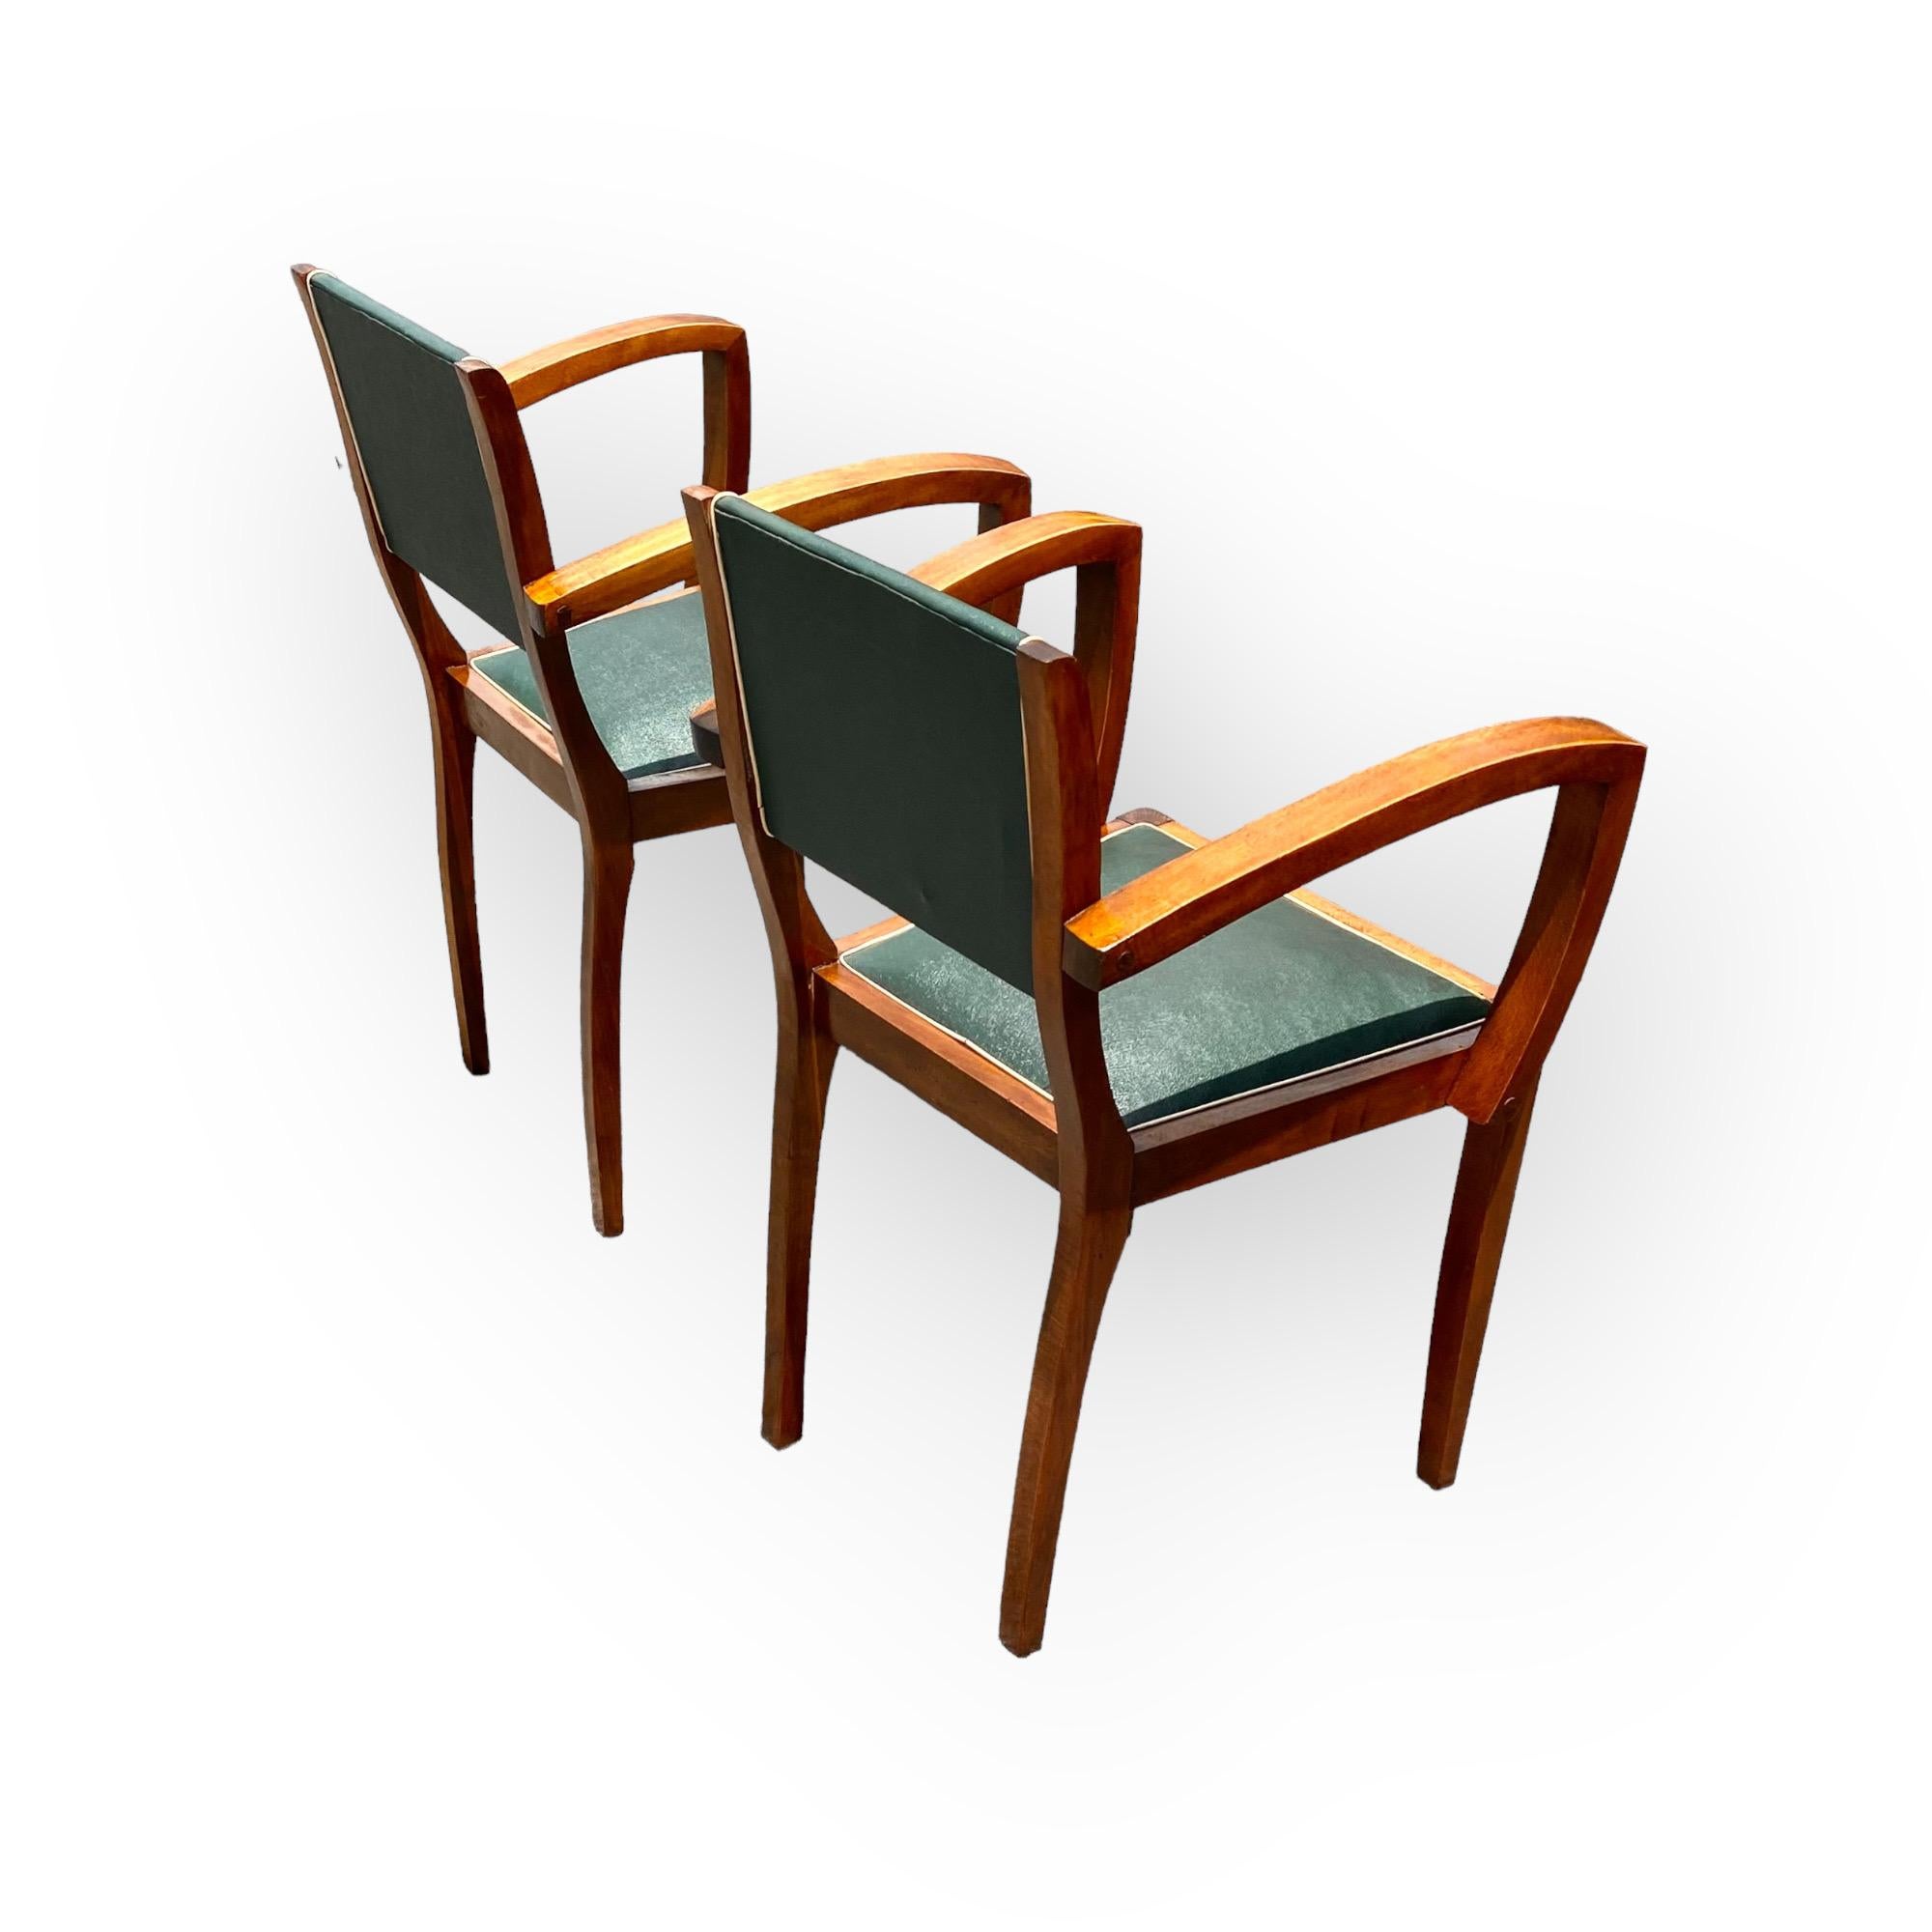 Exceptionnelle paire de fauteuils bridge Art déco parisiens, avec accoudoirs ouverts, recouverts de faux cuir d'origine avec bandes contrastées, en bon état, vers 1930.
Il faut aimer les lignes classiques Art déco de cette paire, dont la simplicité